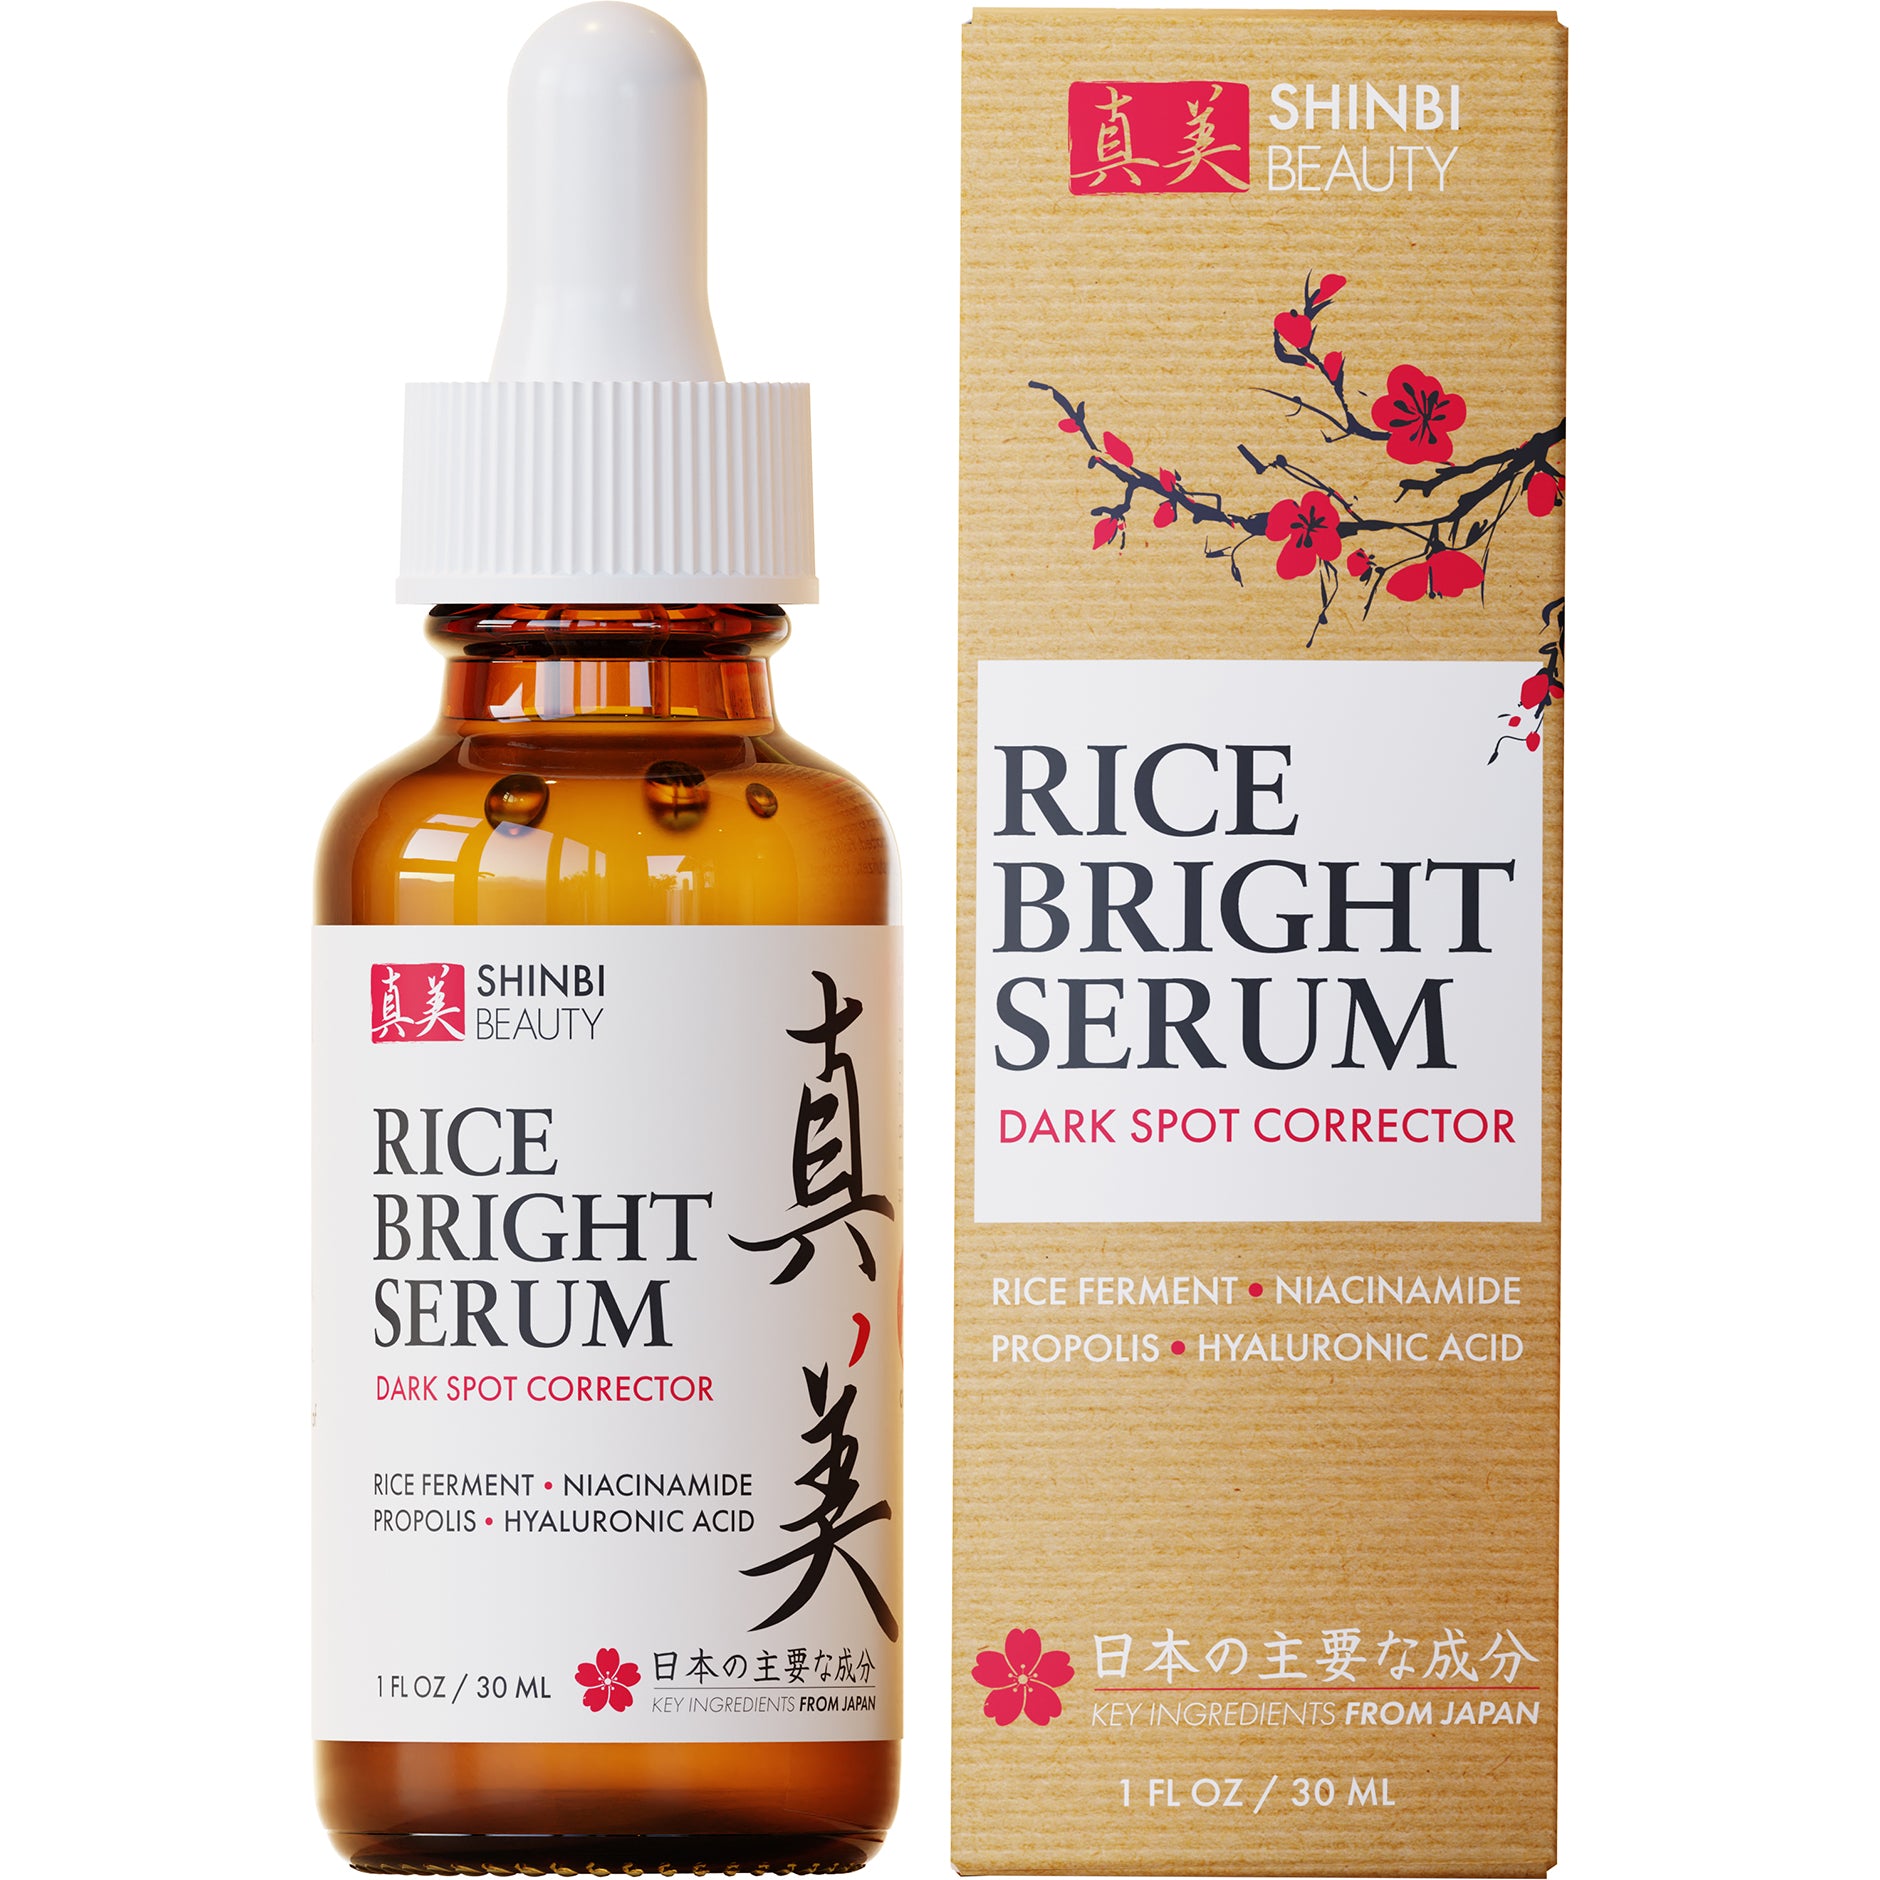 Rice Bright Serum